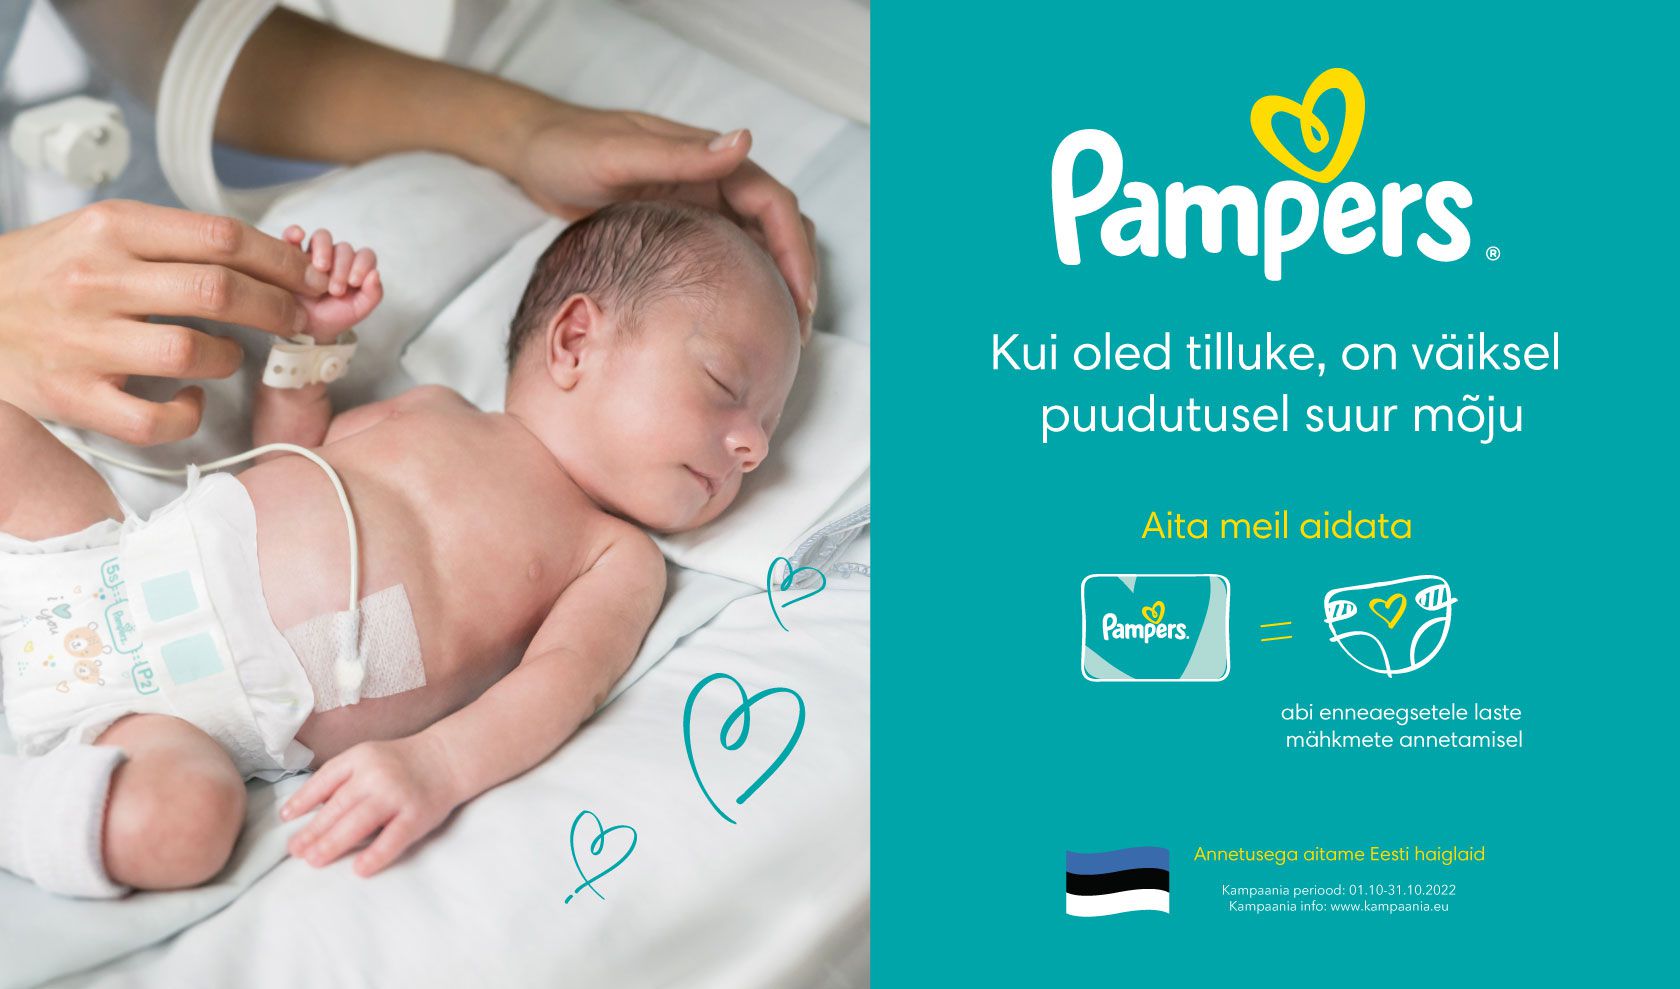 Aita Eesti enneaegseid lapsi, ostes Pampers mähkmeid!